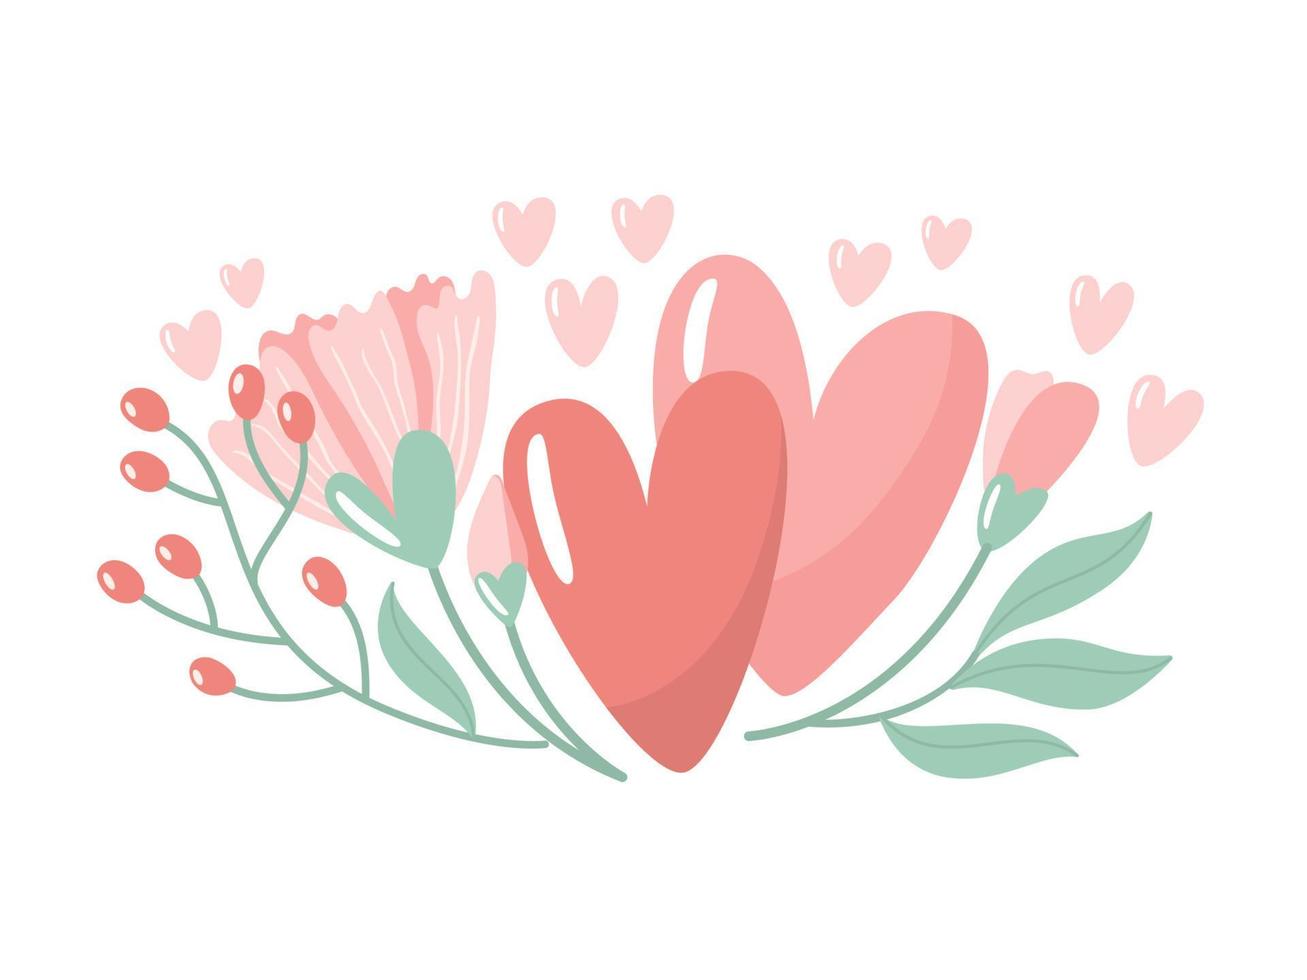 ilustración vectorial para el día de san valentín. dos corazones con flores sobre fondo blanco. tarjeta de felicitación creativa con elementos decorativos dibujados a mano. elegante diseño femenino. vector